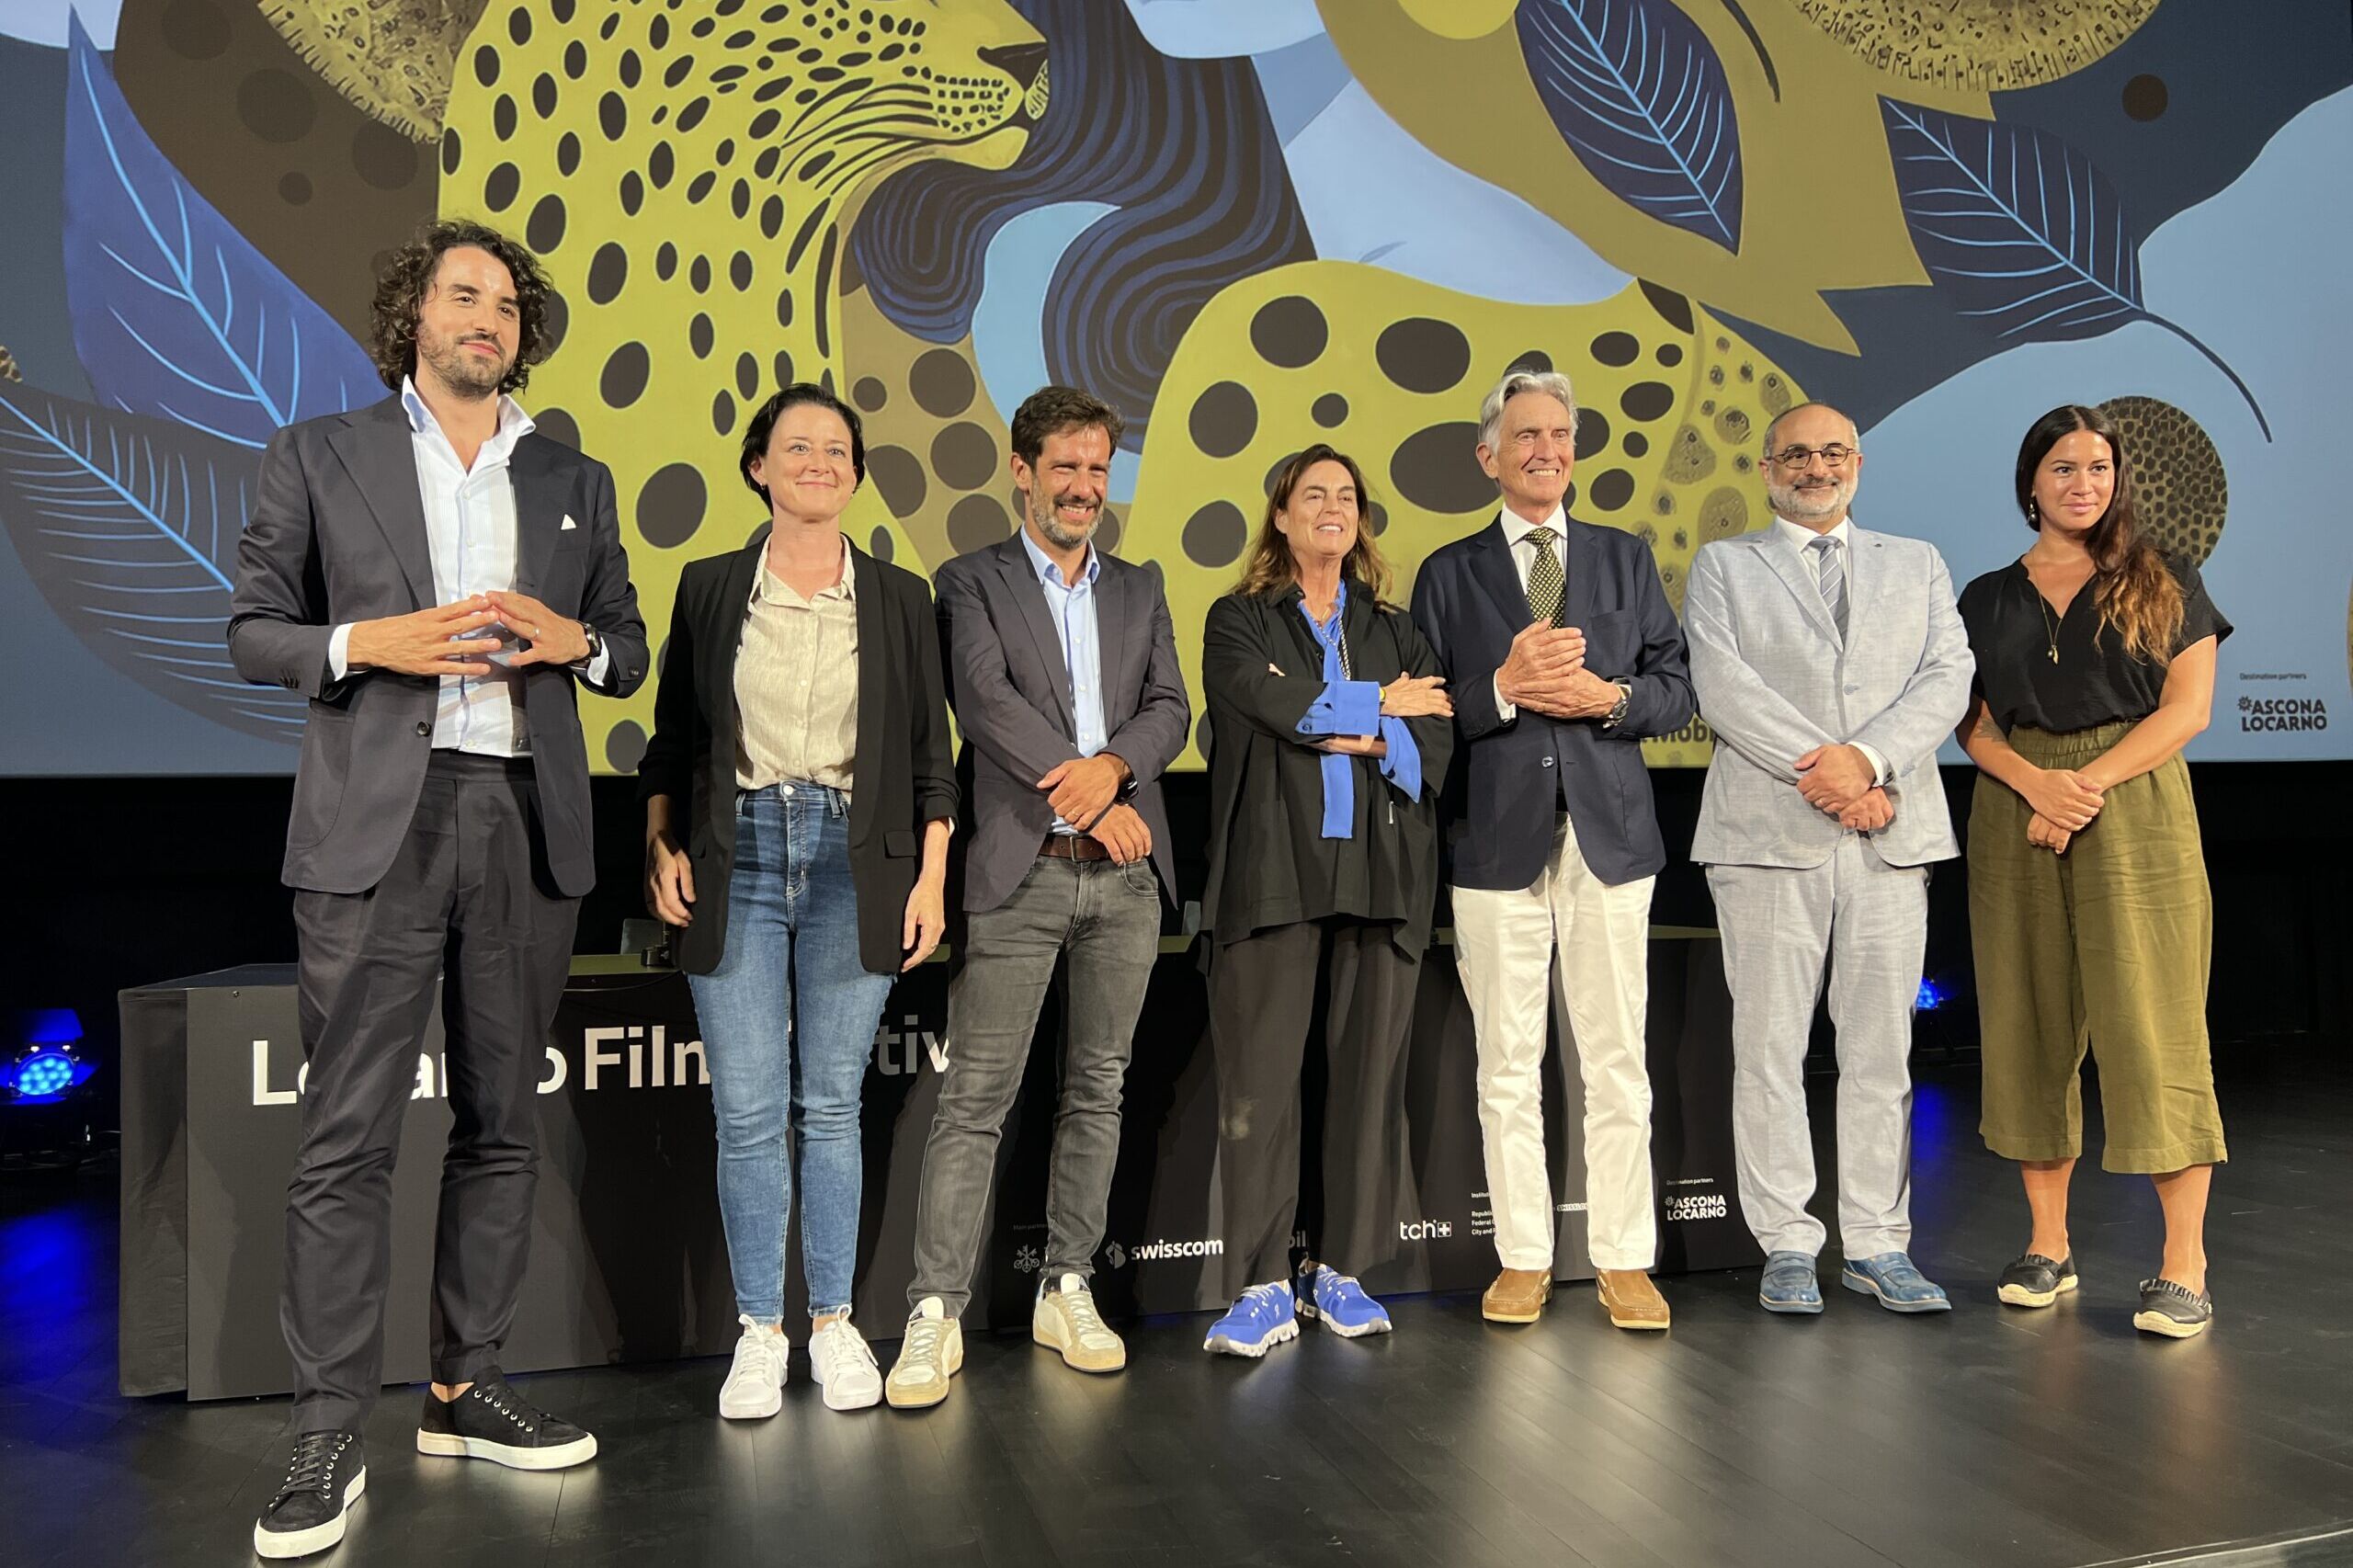 Locarno Film Festival: la conferenza stampa 2023